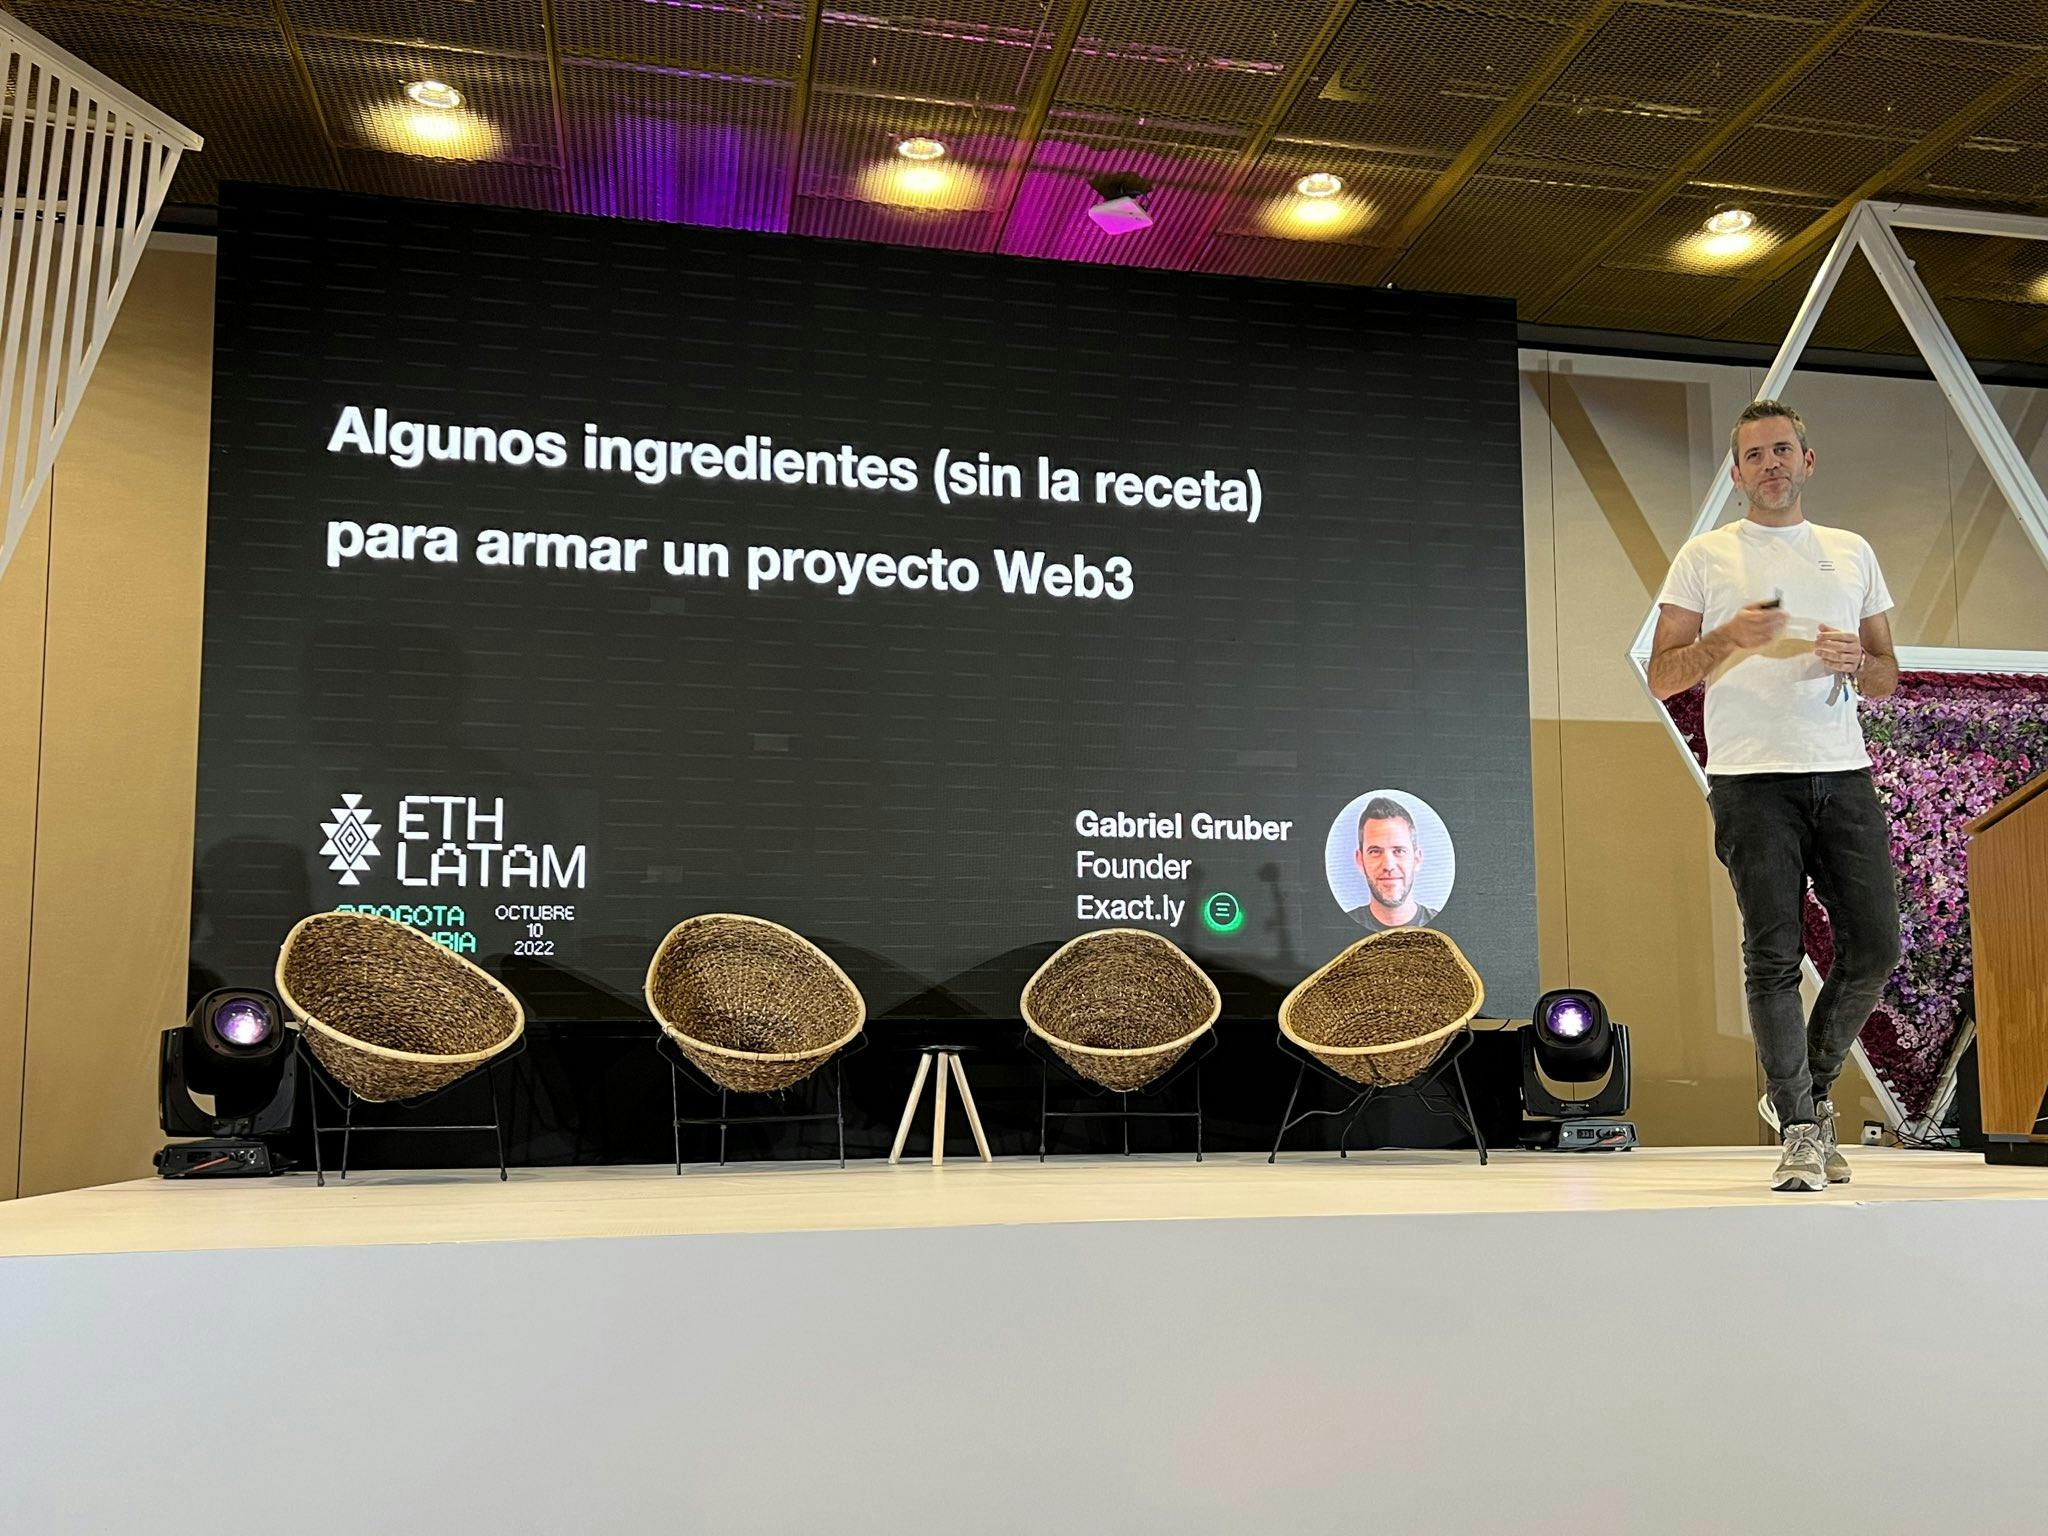 Gabriel Gruber giving his presentation at ETHLatam Bogotá. 